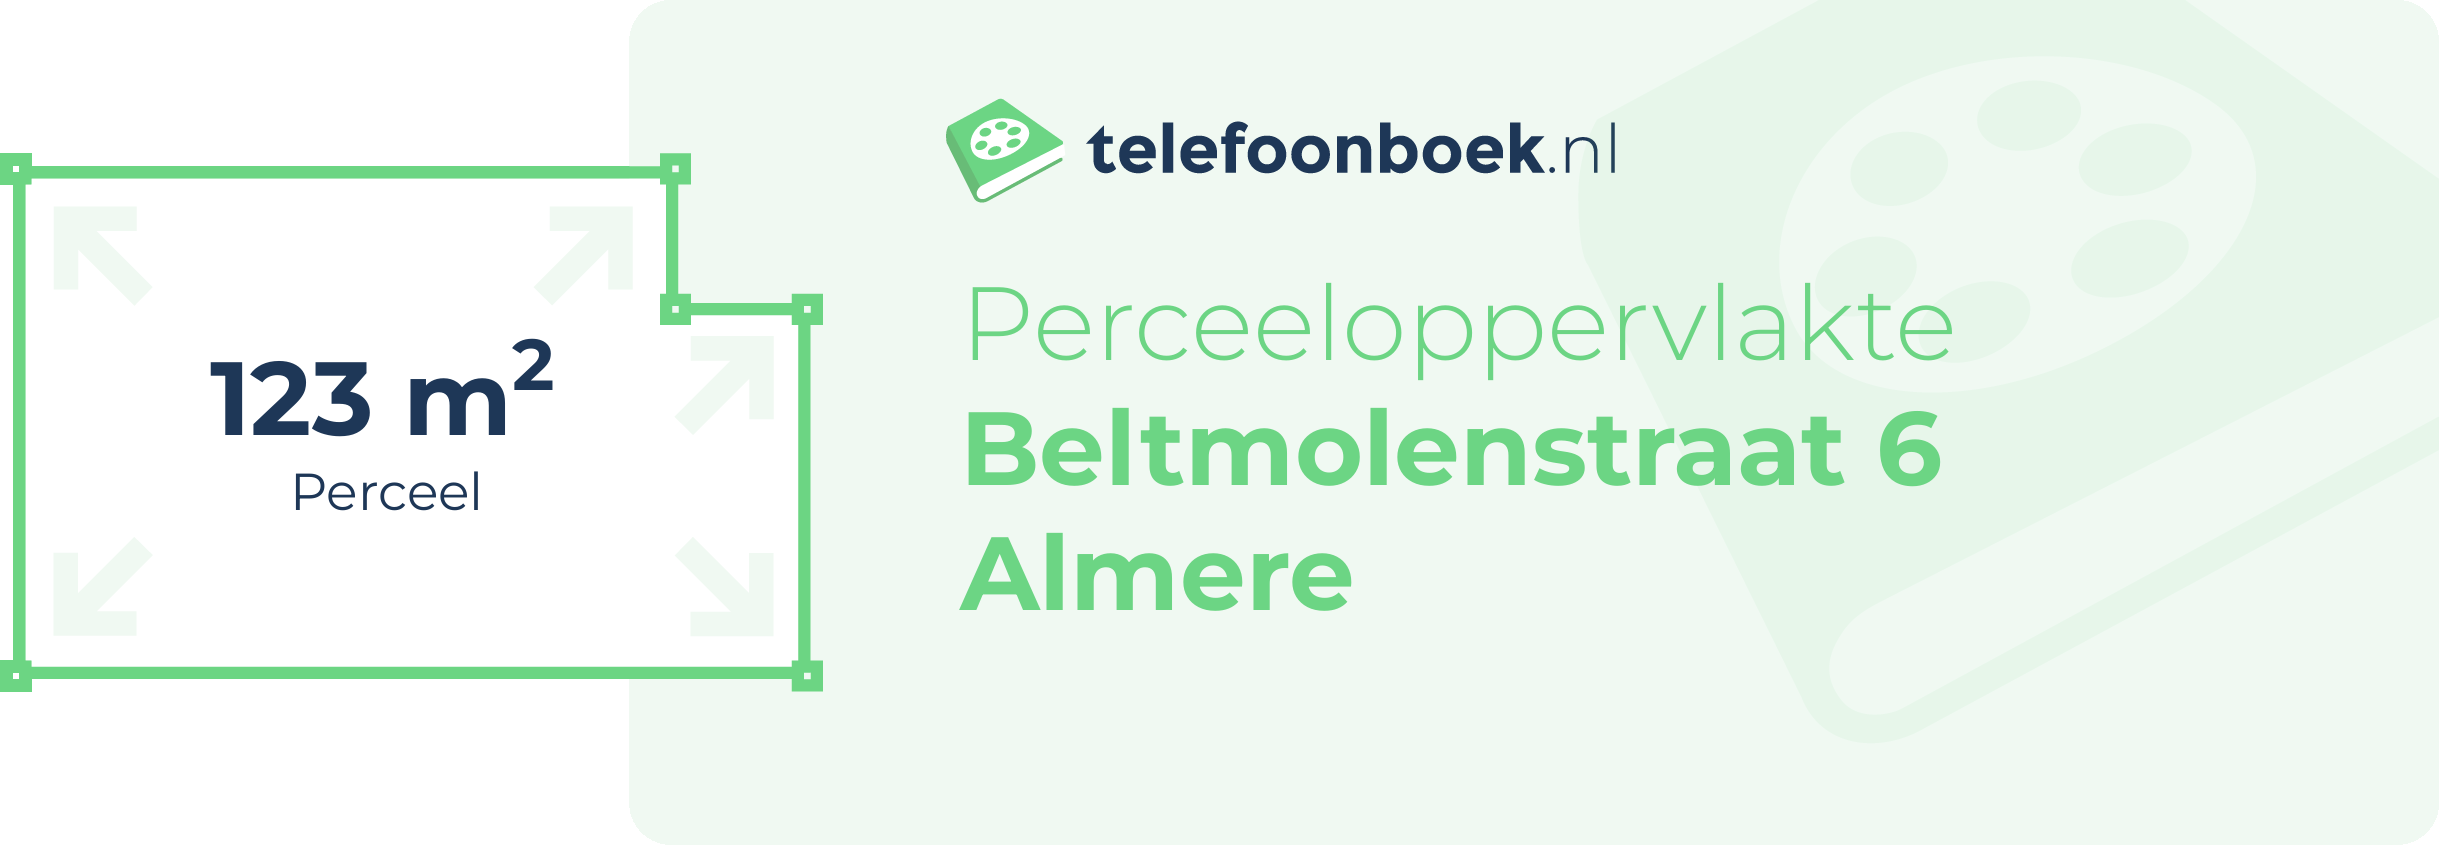 Perceeloppervlakte Beltmolenstraat 6 Almere